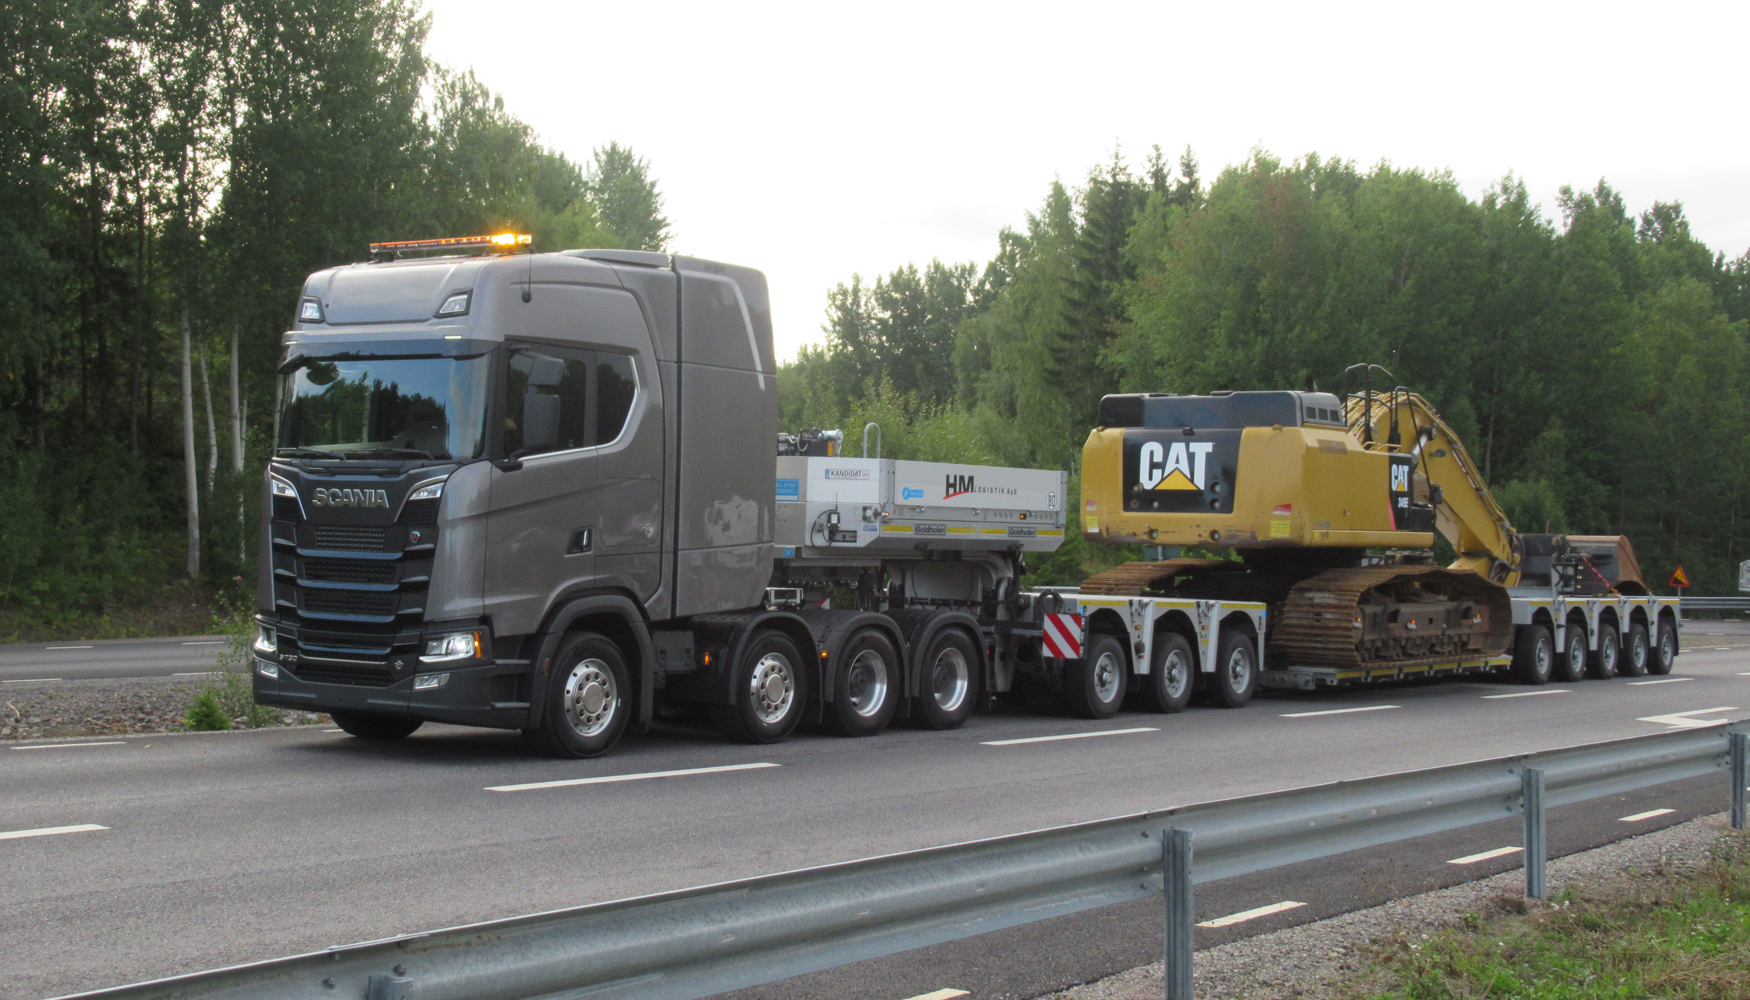 Uno de los camiones ms espectaculares de la exhibicin, con cerca de 30 m de longitud y ms de 100 toneladas de peso...